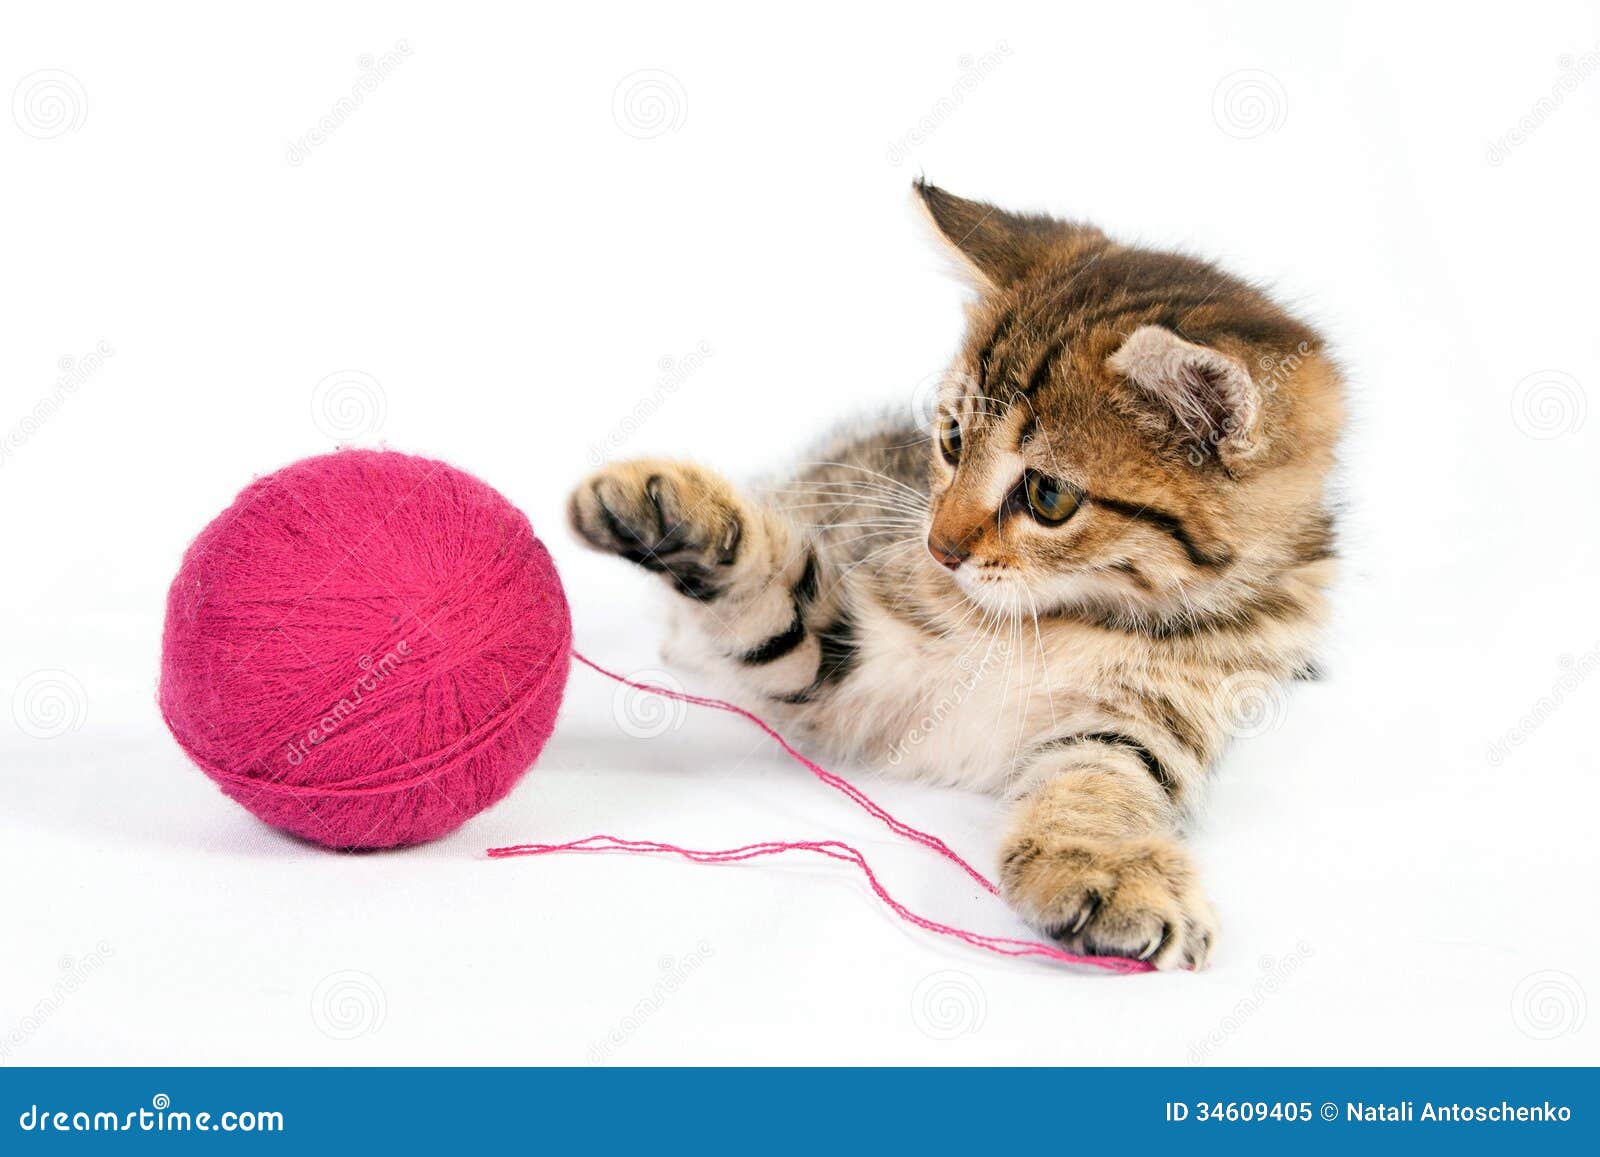 Gestreepte katkatje het spelen met een bal van garen. Het kleine gestreepte katkatje spelen met een bal van garen